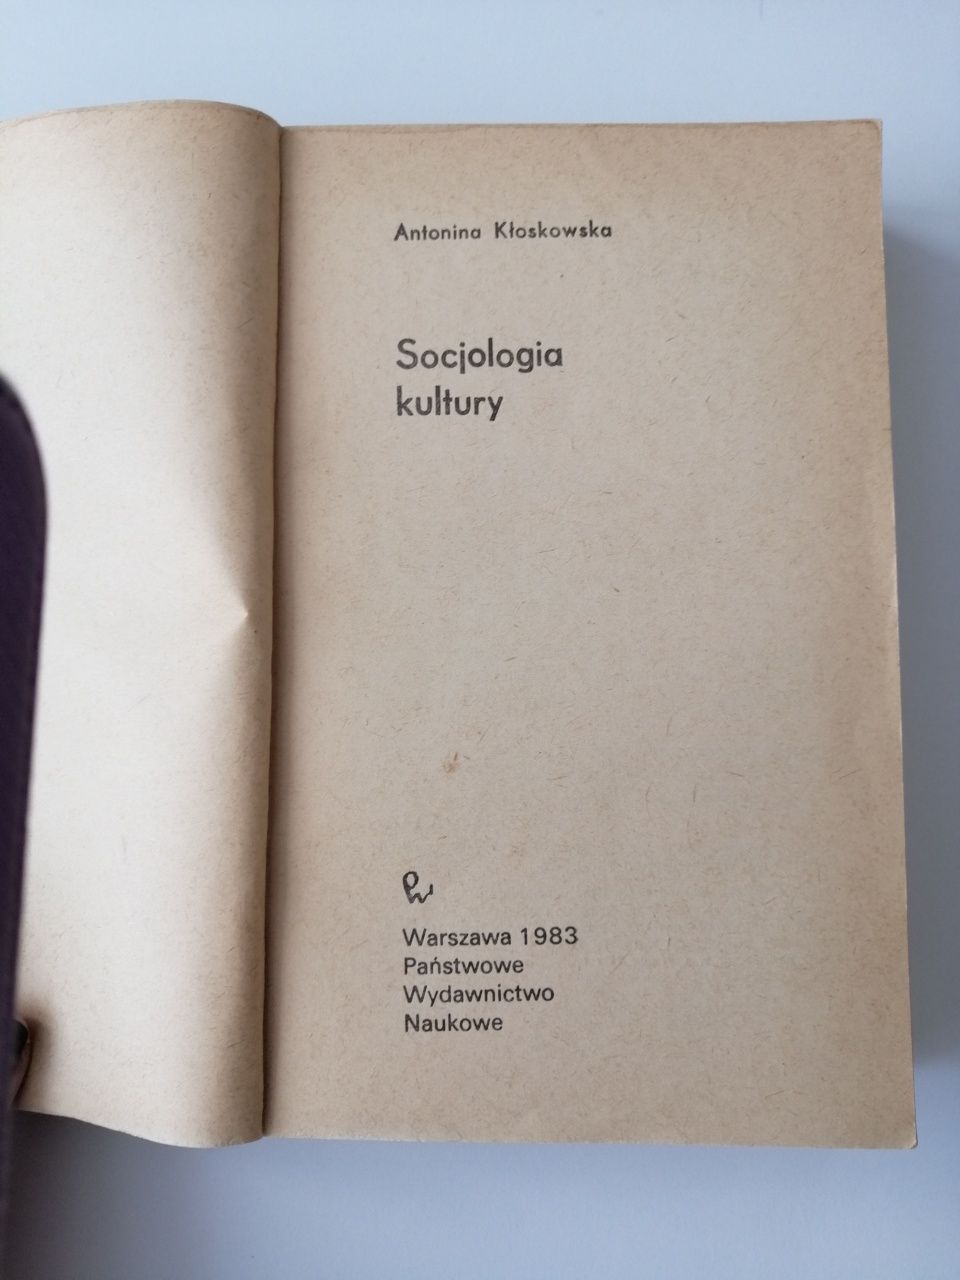 Książka "Socjologia kultury" A. Kłoskowska